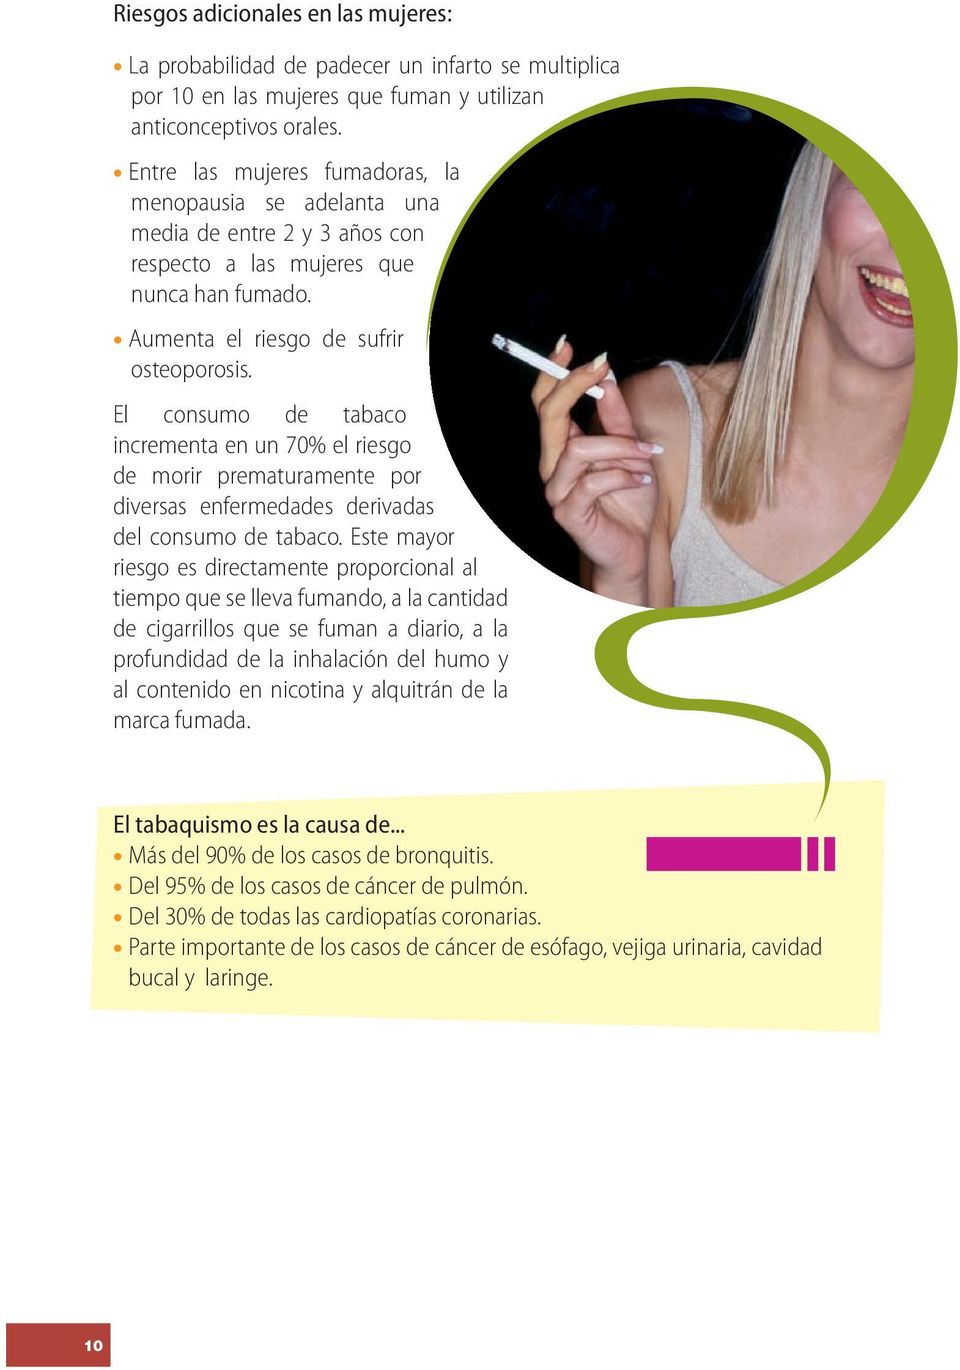 El consumo de tabaco incrementa en un 70% el riesgo de morir prematuramente por diversas enfermedades derivadas del consumo de tabaco.